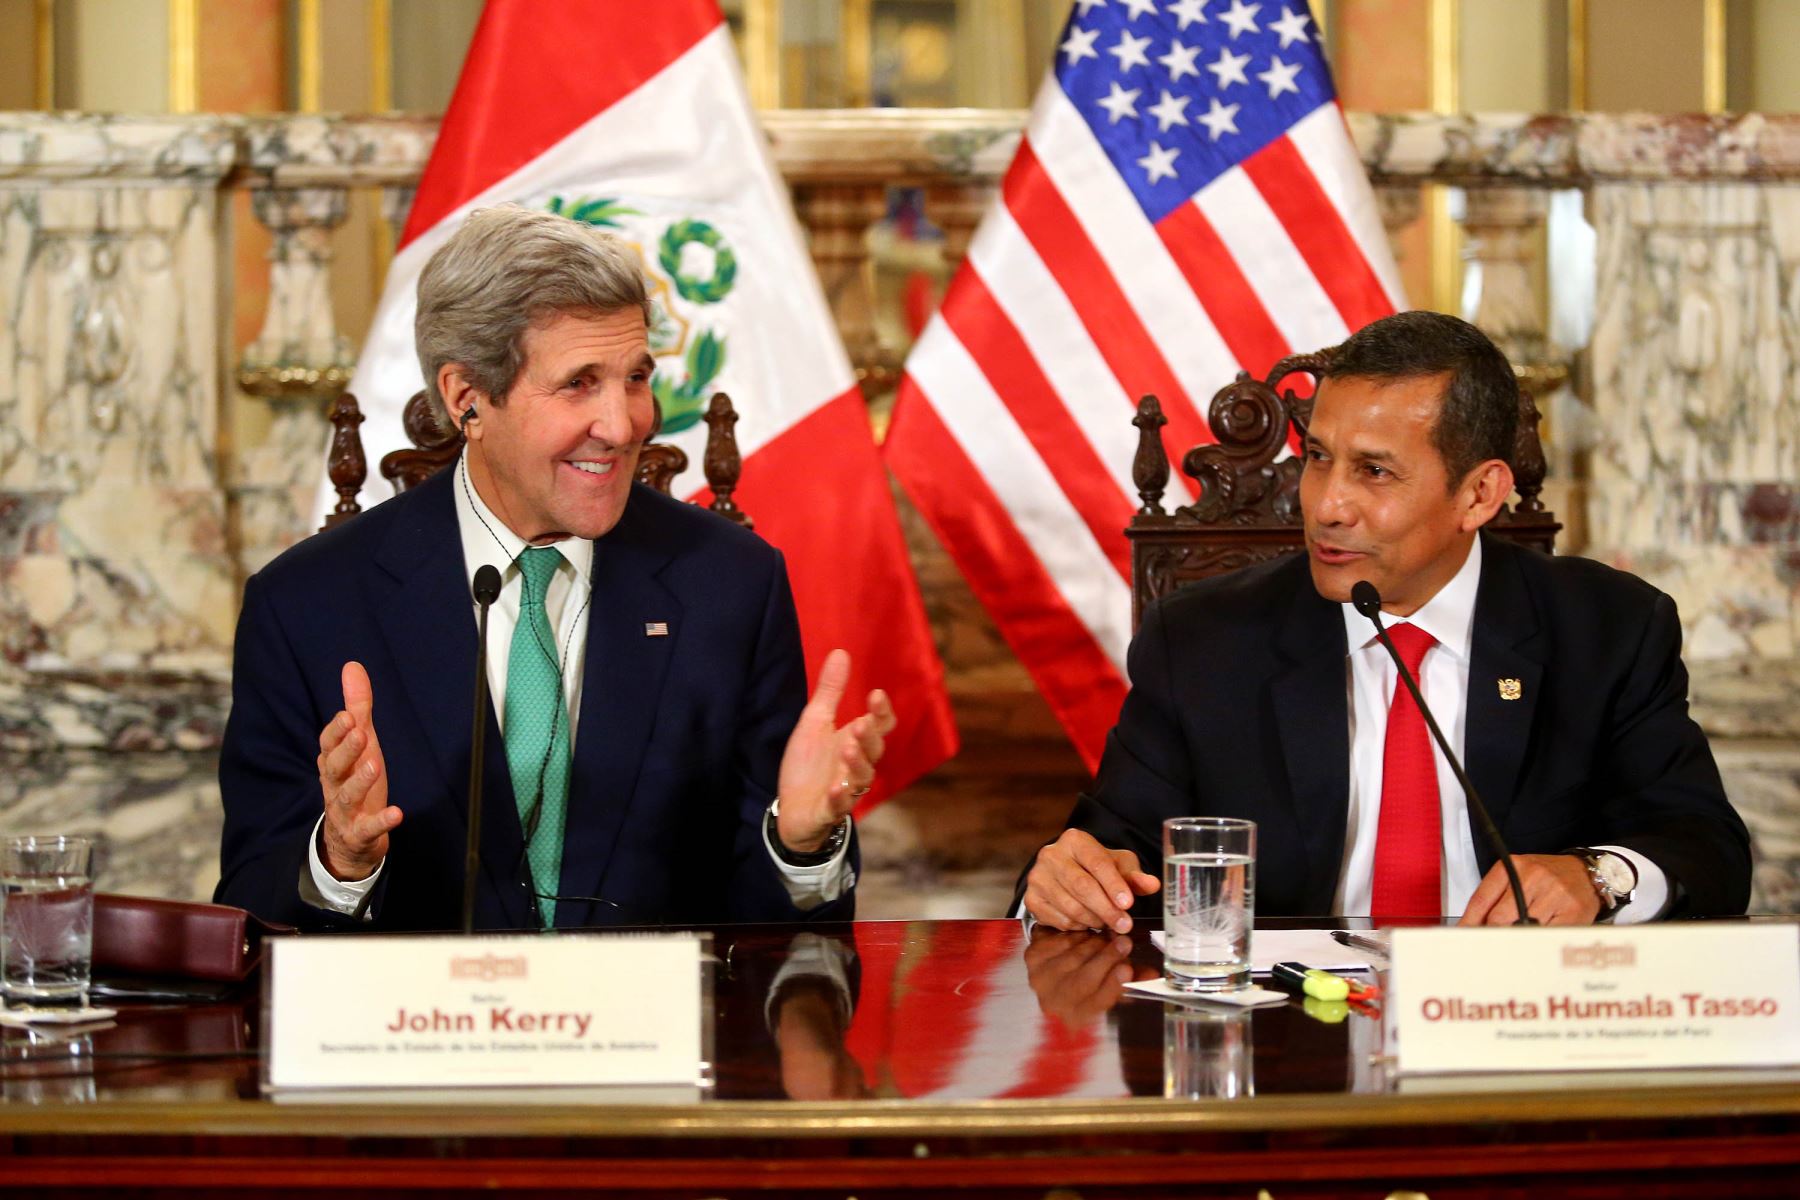 Audiencia y declaración conjunta del presidente Ollanta Humala y el Secretario de Estado de los Estados Unidos, John Kerry, en Palacio de Gobierno. ANDINA/Prensa Presidencia